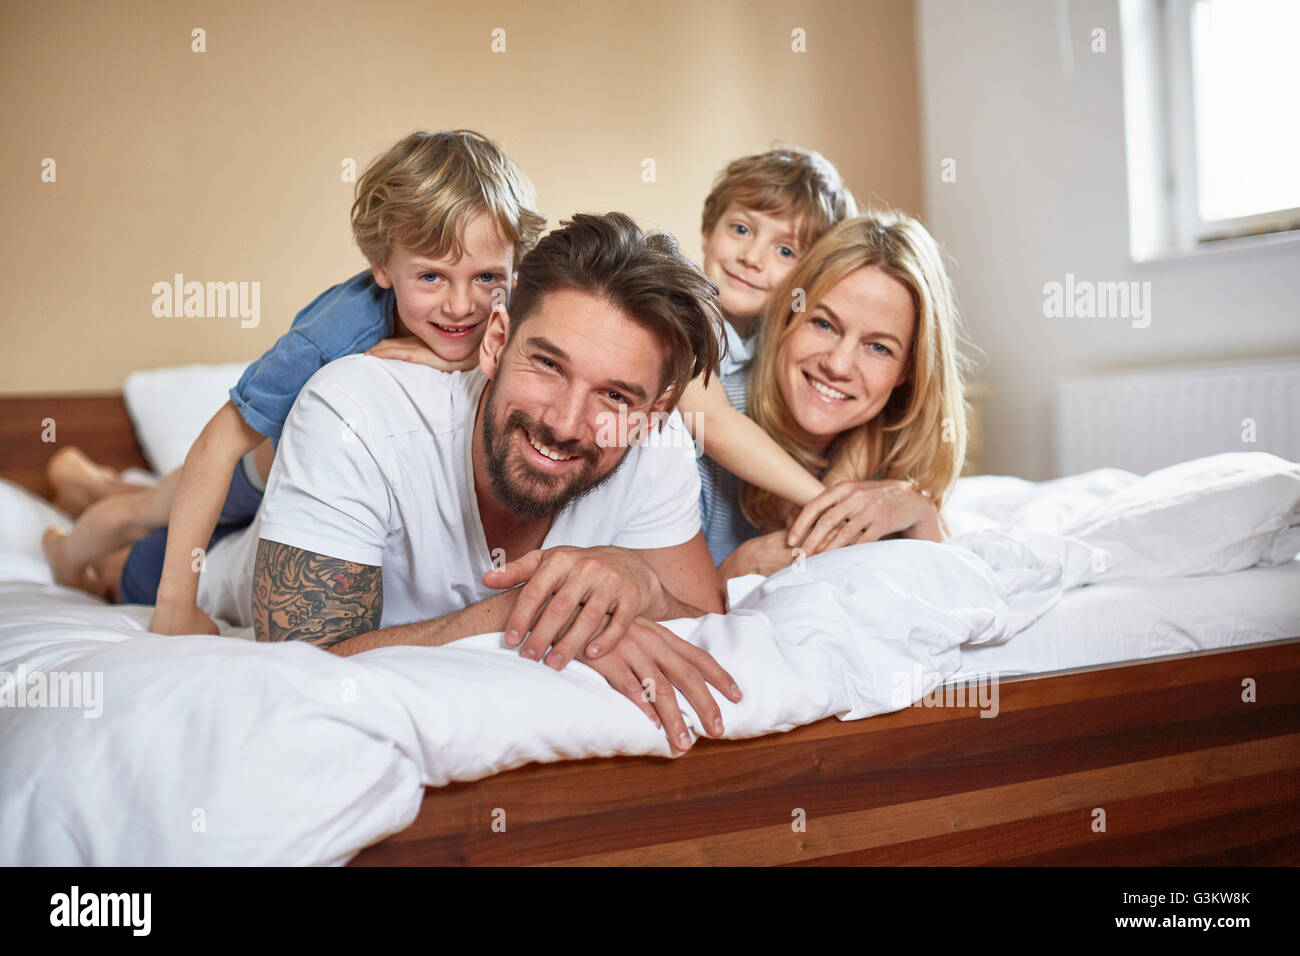 Les garçons sur lit située au-dessus de parents smiling at camera Banque D'Images